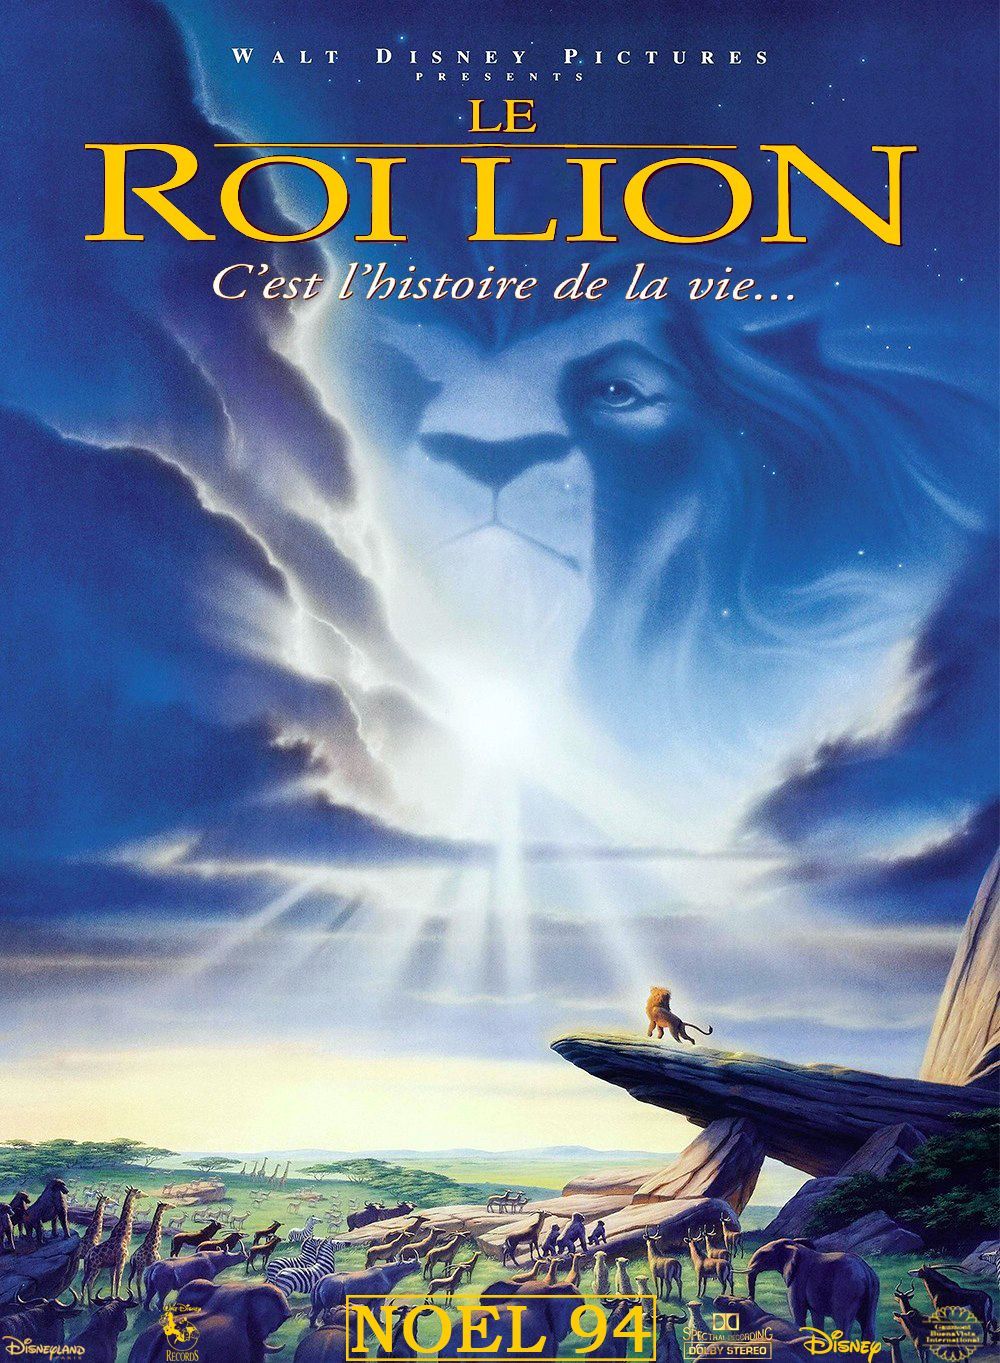 Le Roi Lion (Bande Originale Du Film, Version Français) (1994, CD) - Discogs